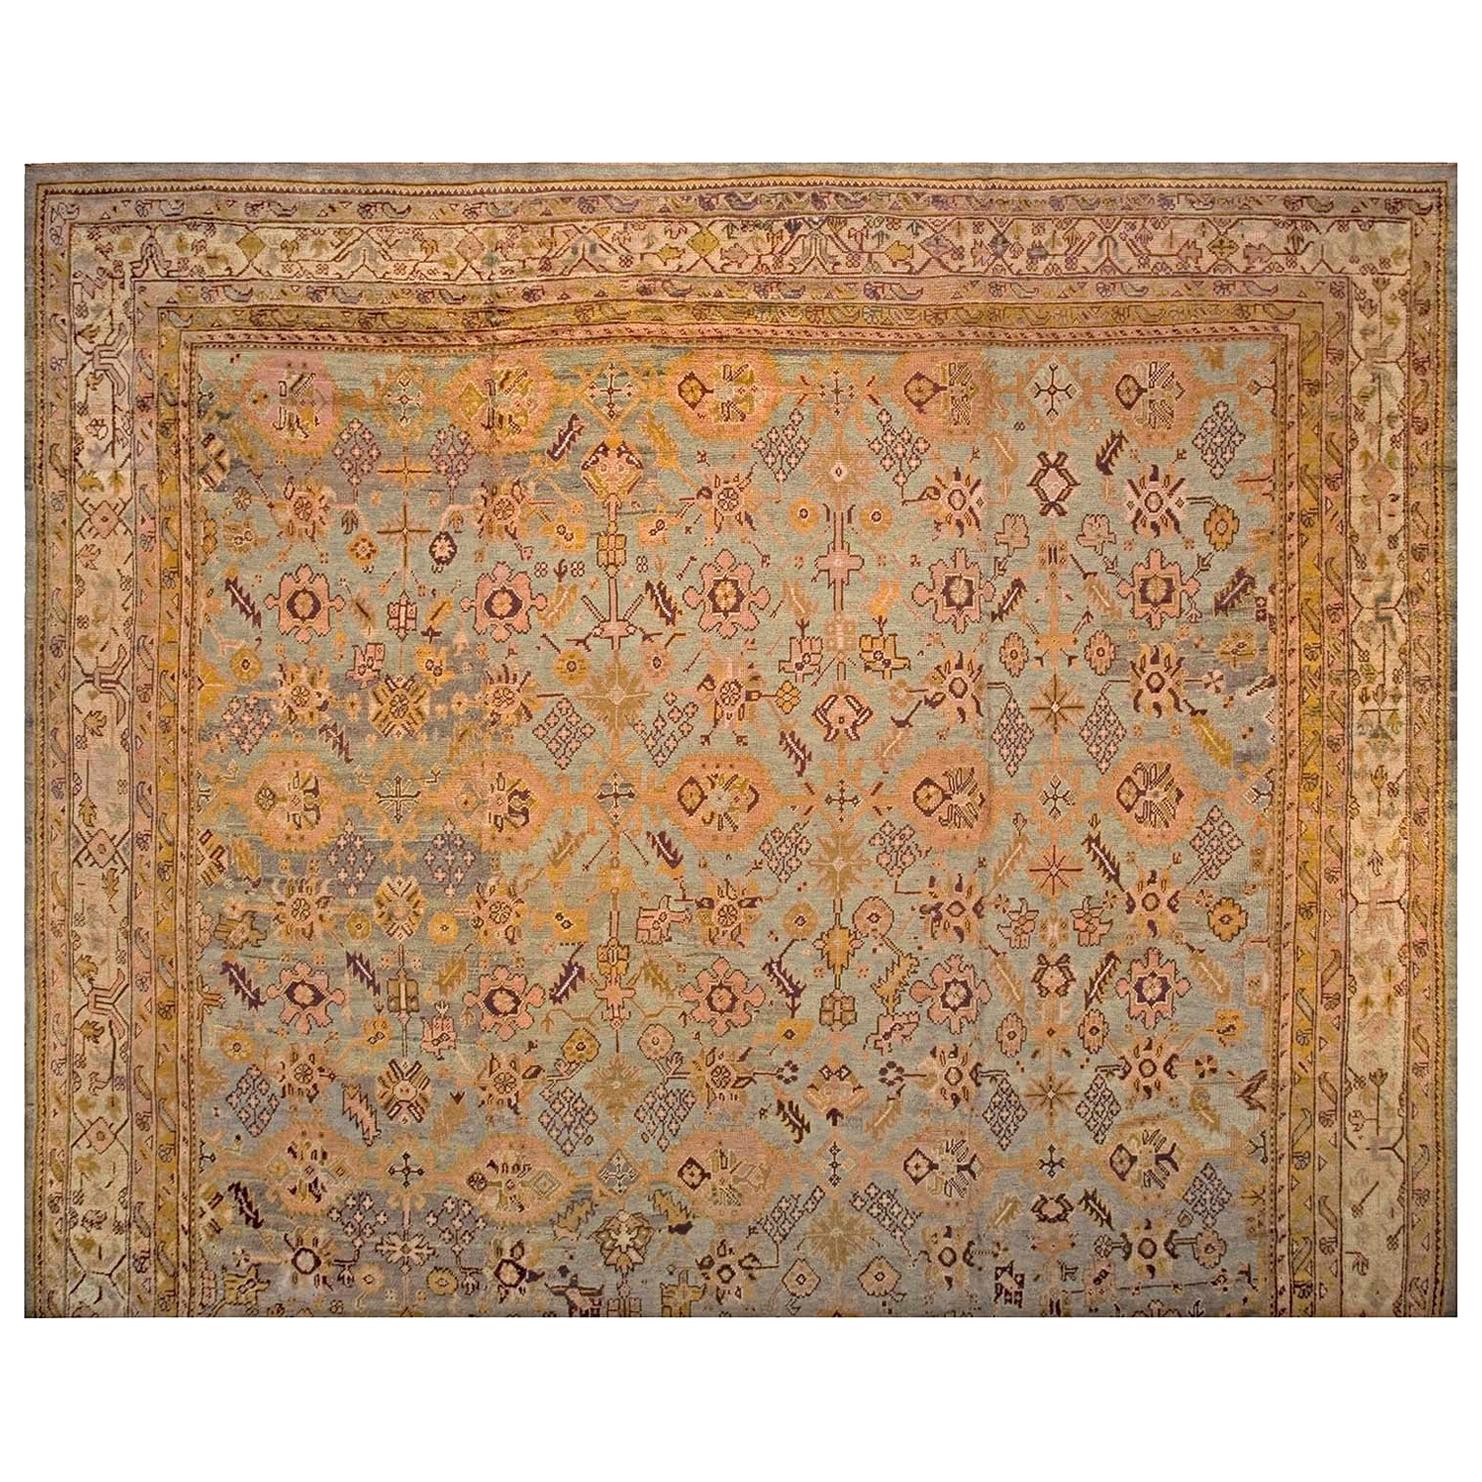 Türkischer Oushak-Teppich des späten 19. Jahrhunderts ( 17''6 x 19''6 - 533 x 594)